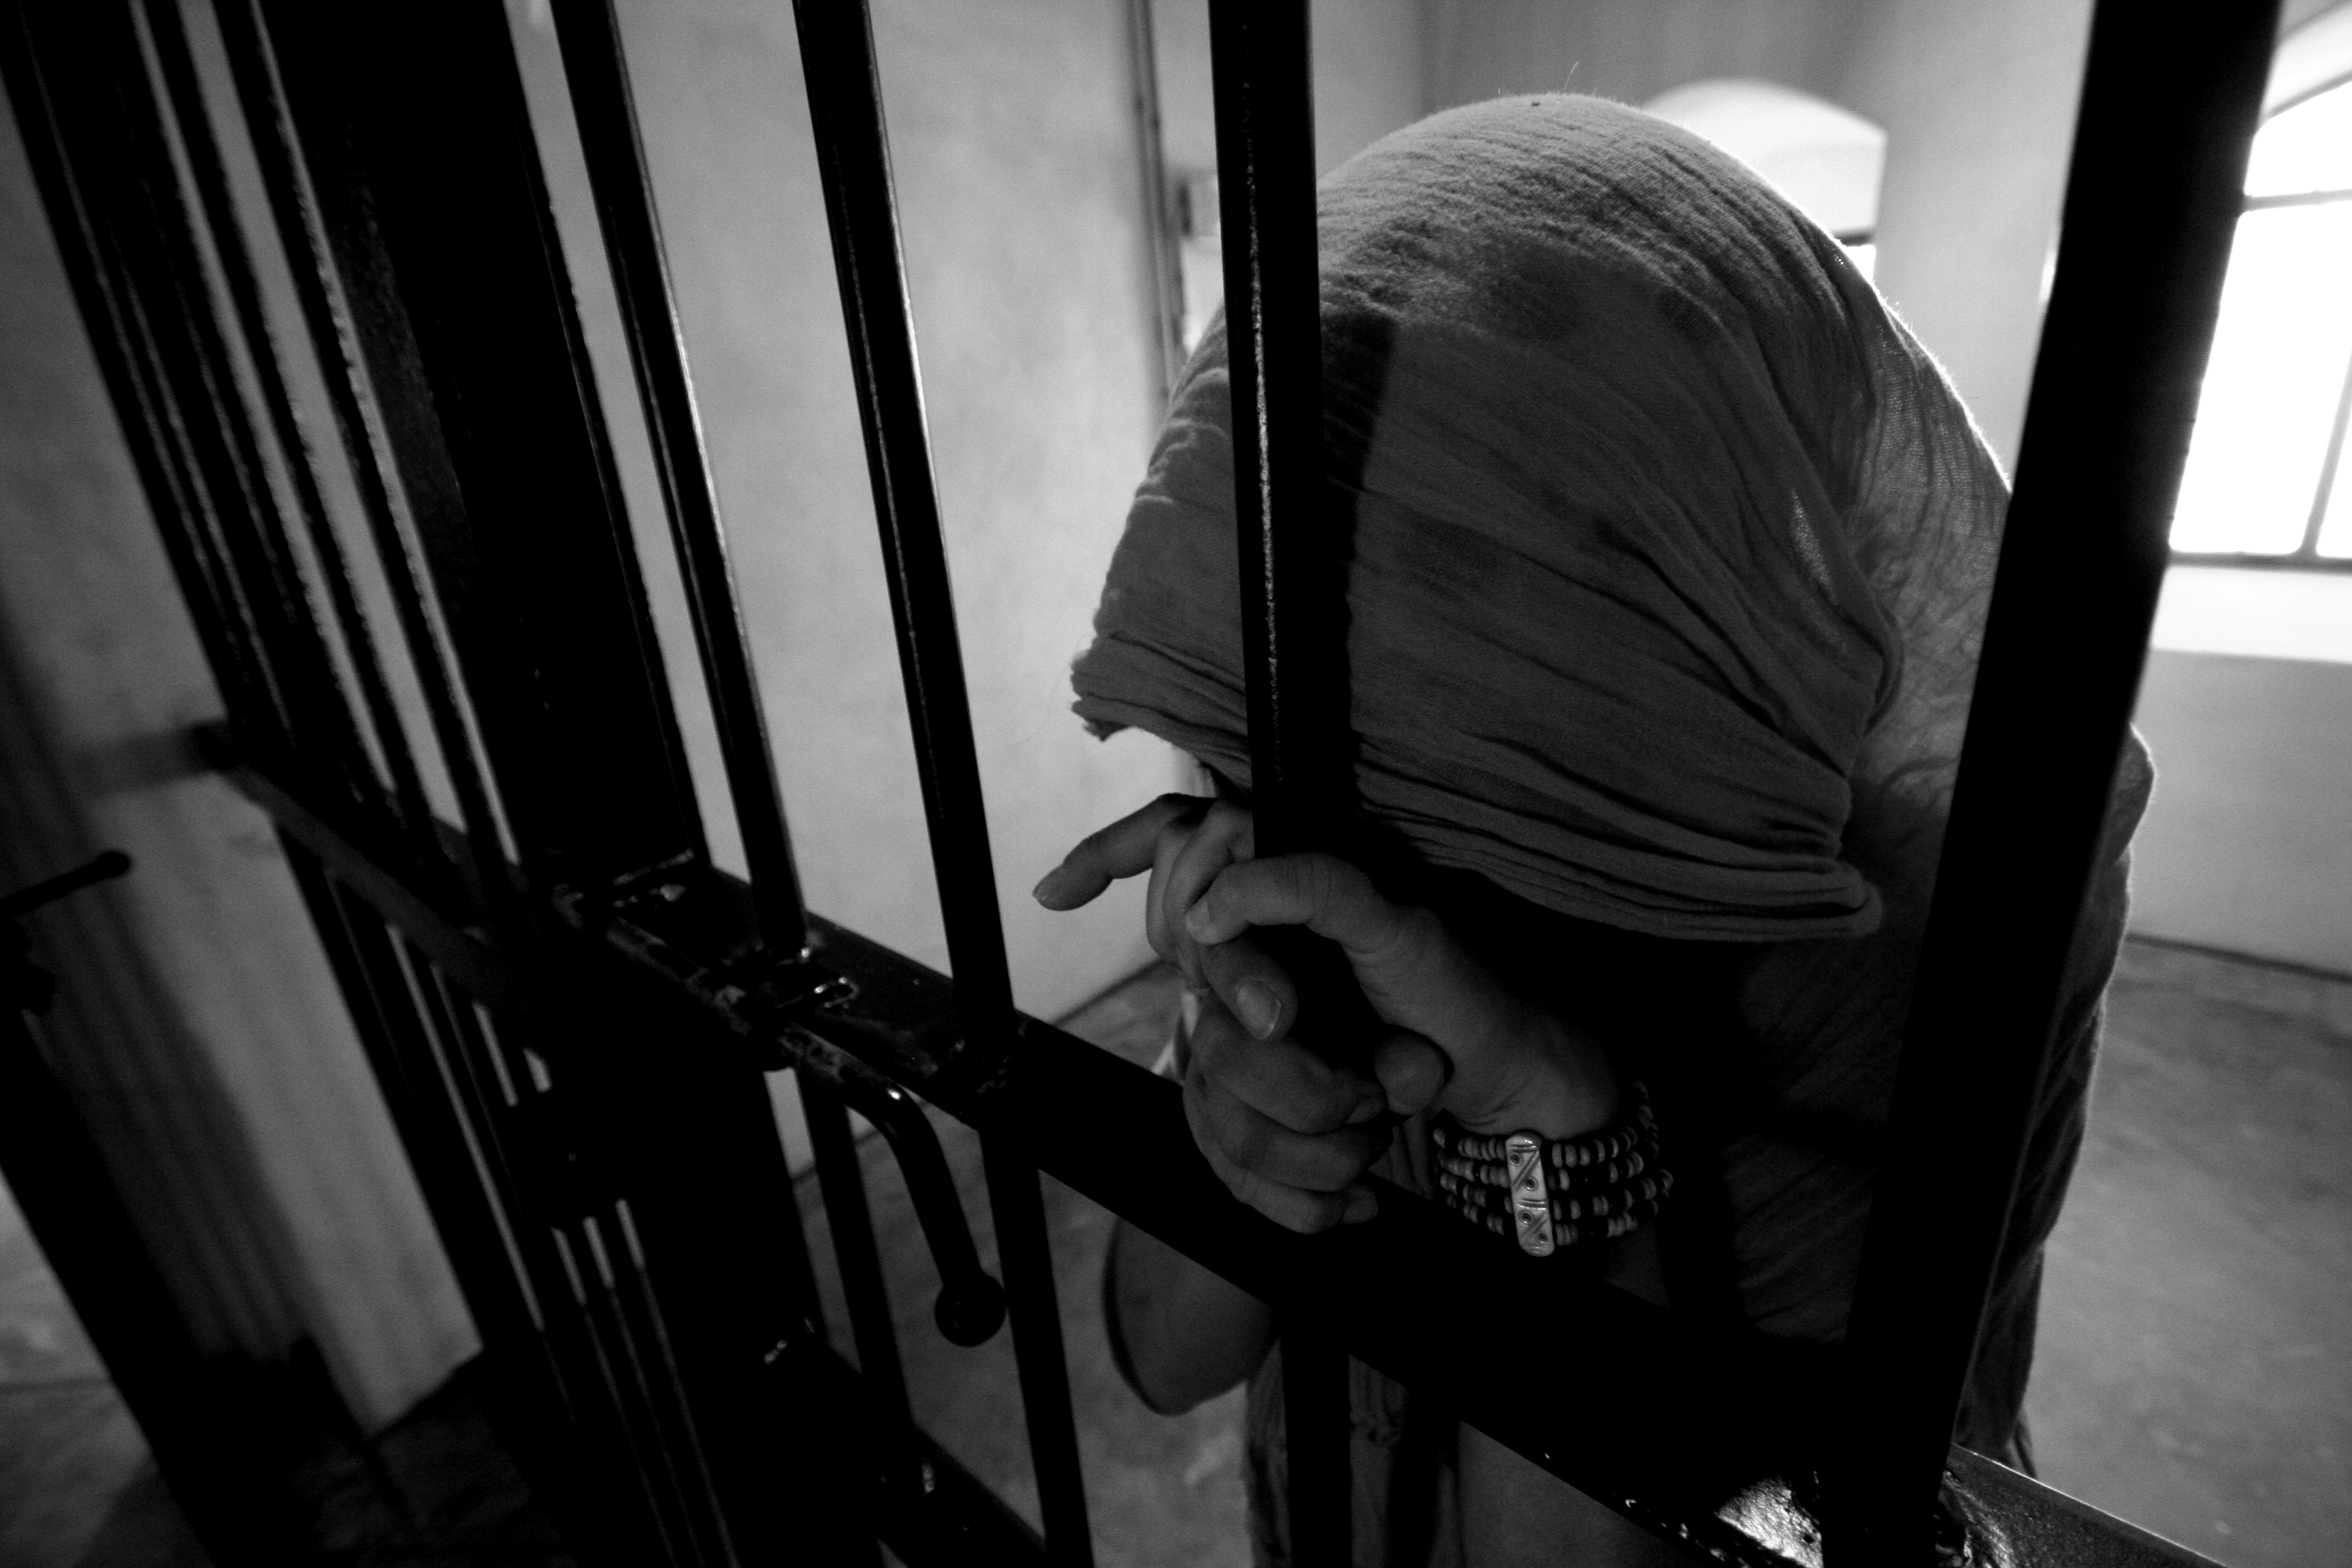 سجينة سبعينية في الكويت ترسل رسالة إستغاثة مؤثرة من سجنها (فيديو) | وطن  الدبور